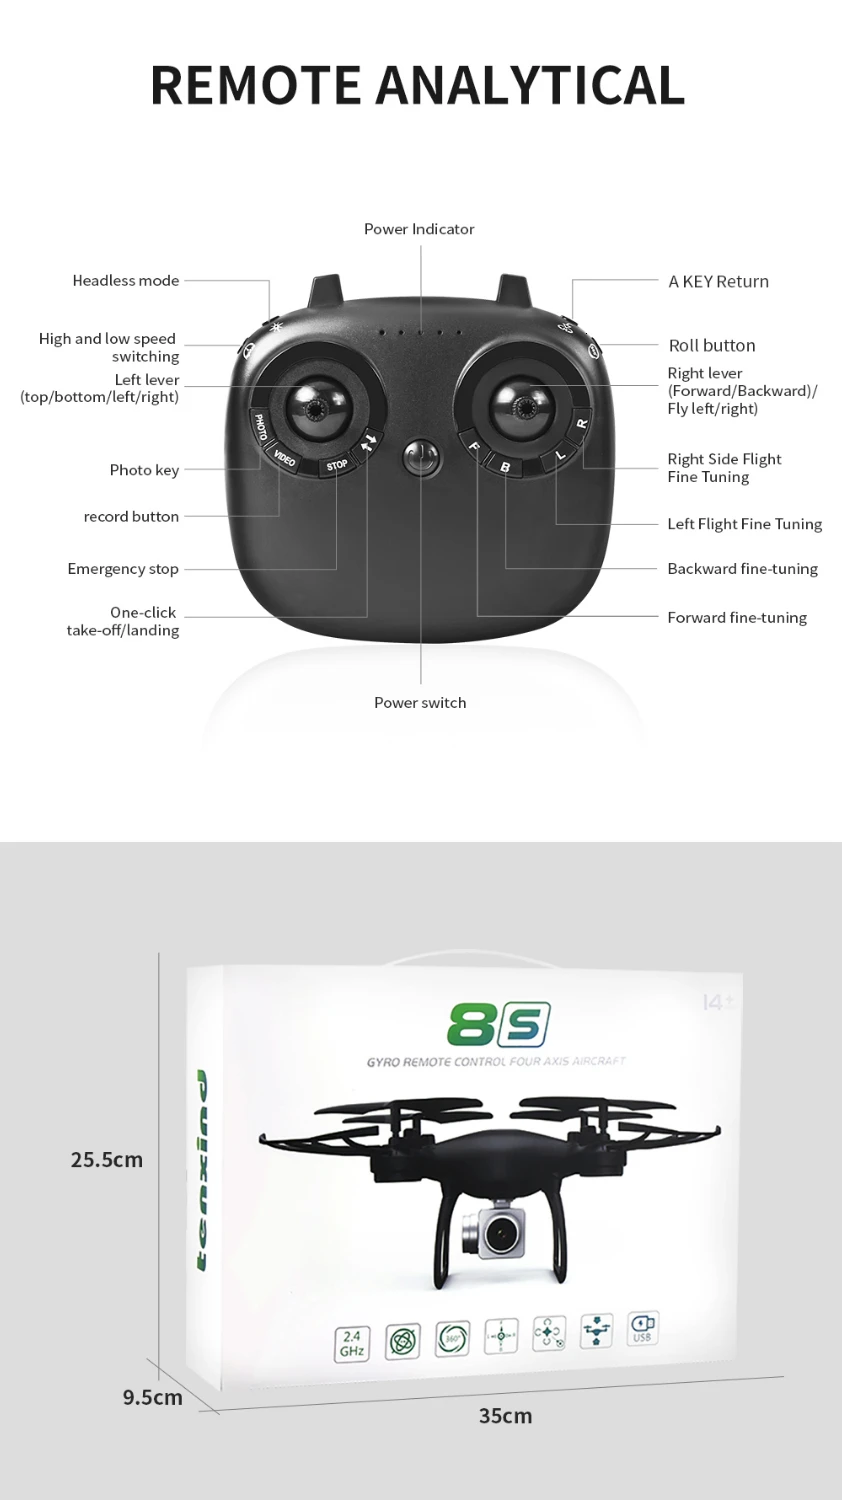 Радиоуправляемый Дрон с 720 P/1080 P HD камерой фиксированная высота Hover Selfie Профессиональный Квадрокоптер Безголовый один ключ возврат дроны игрушка подарок